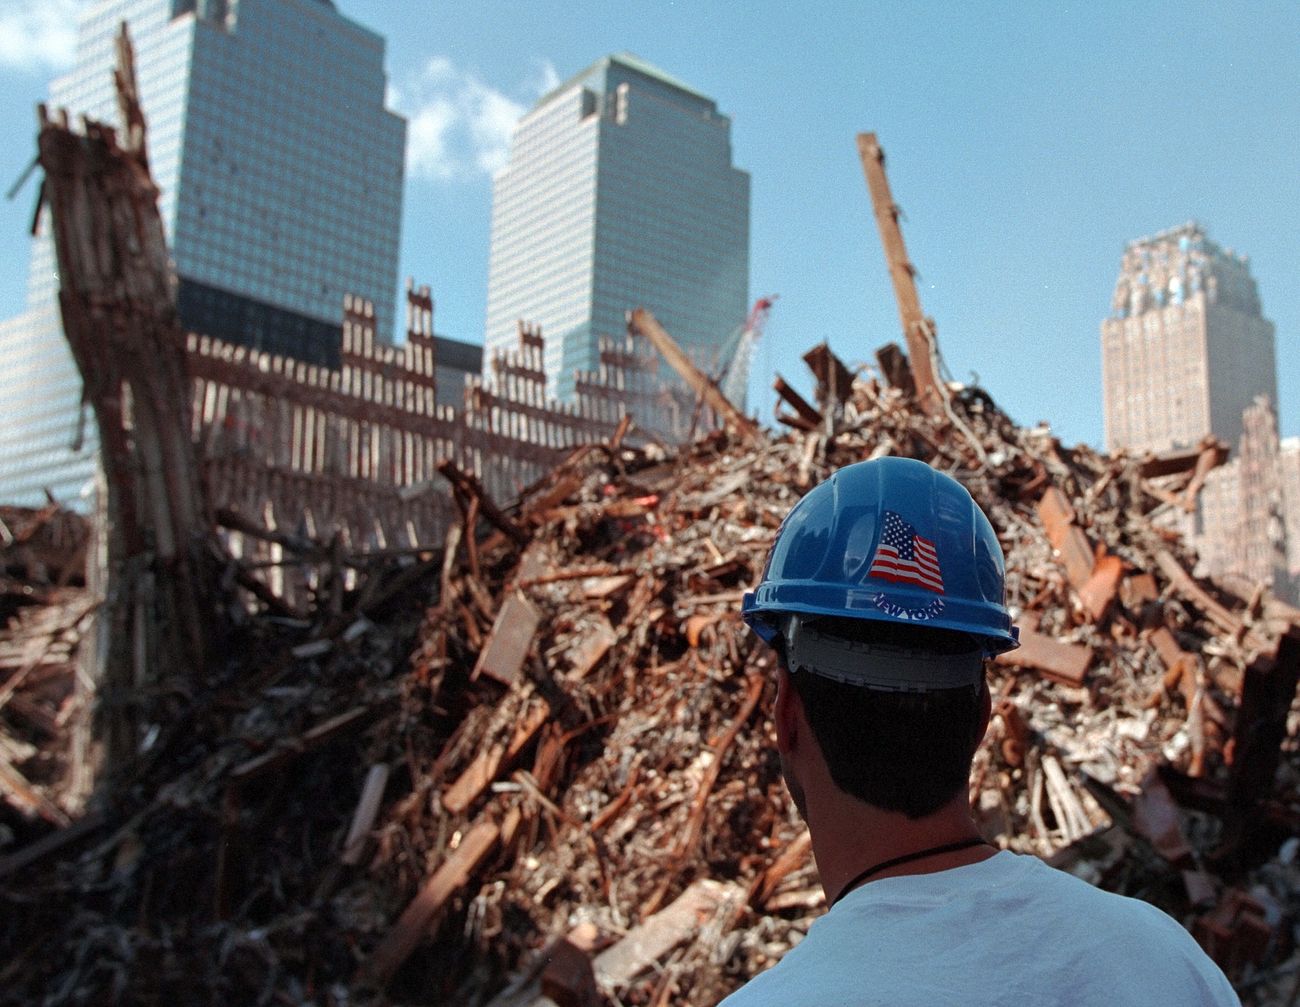 911: Ground Zero, 10/03/2001